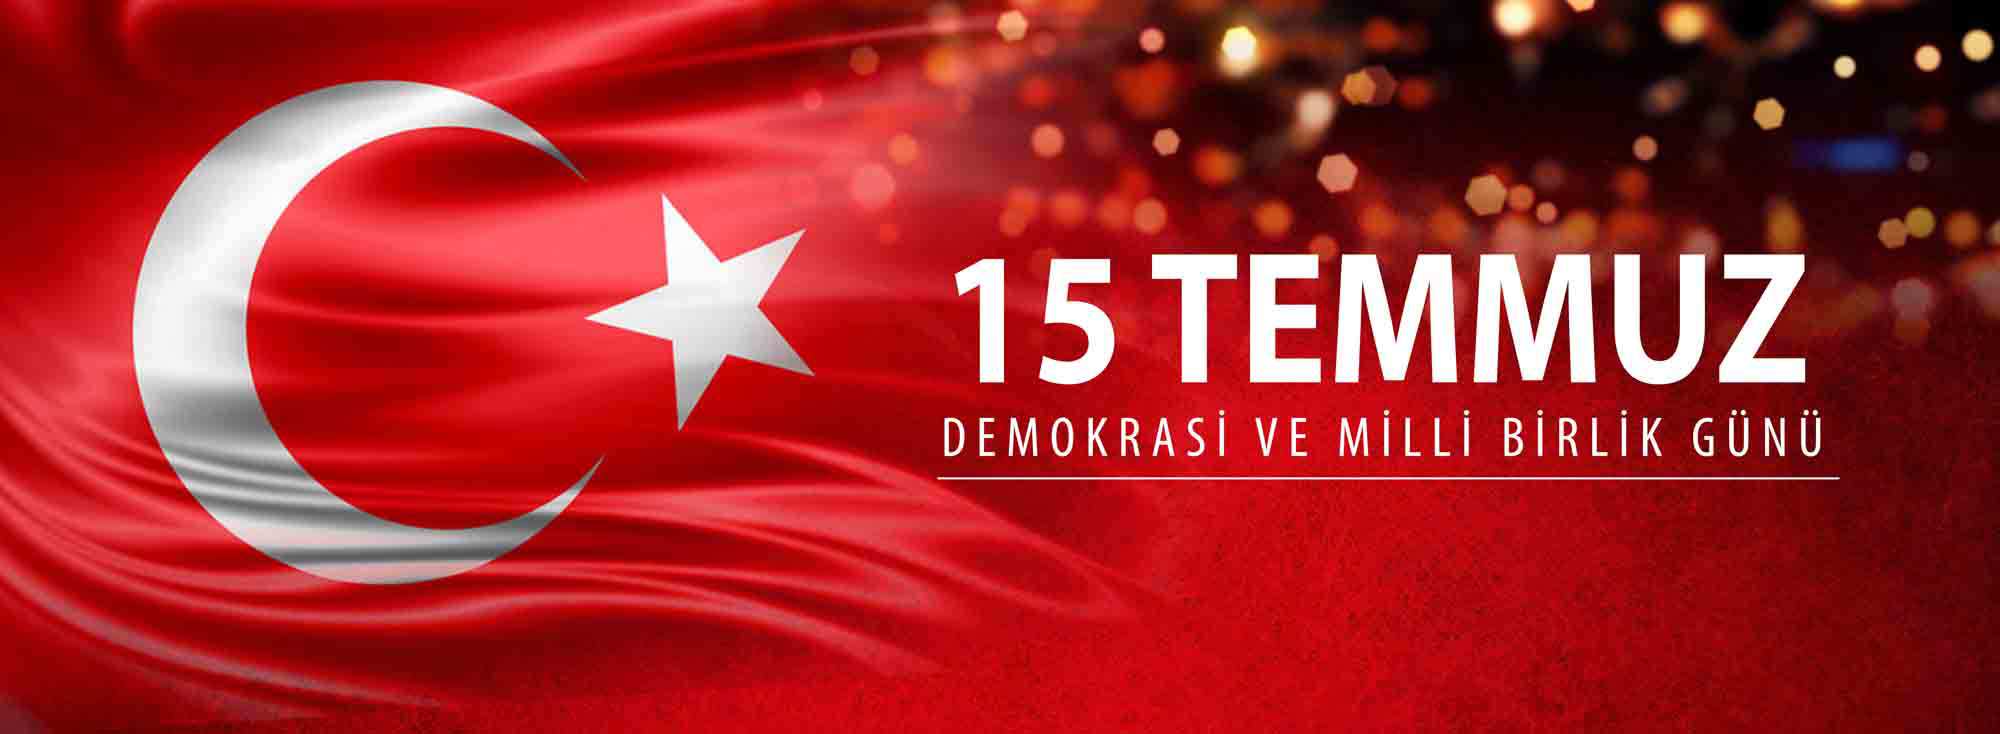 Belediye Başkanı Sayın Ülgür Gökhan'ın 15 Temmuz Demokrasi ve Milli Birlik Günü Mesajı...